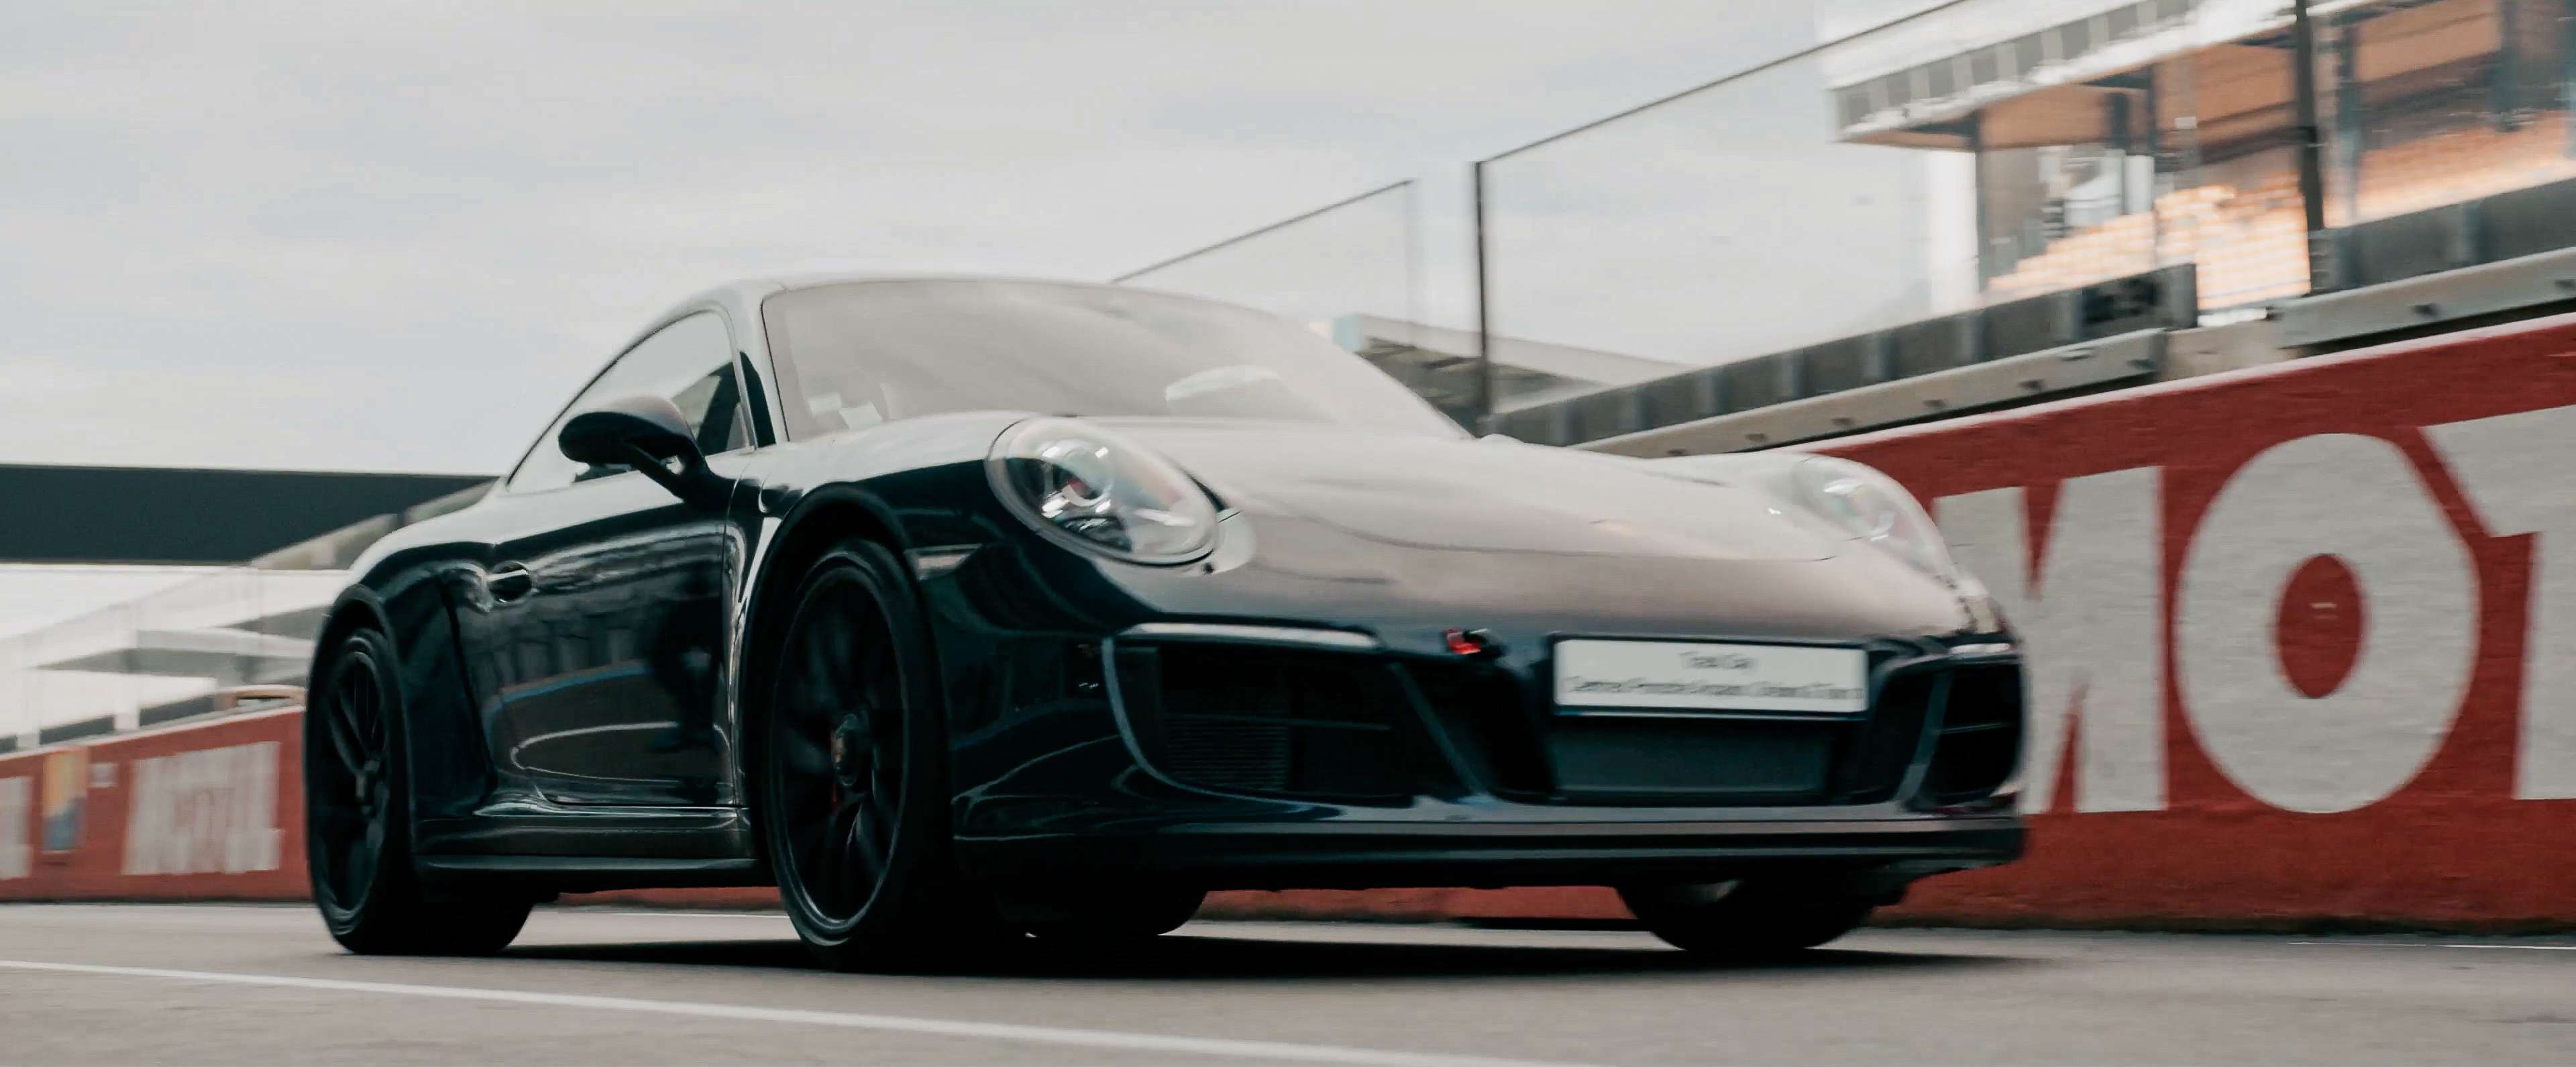 Une Porsche noire